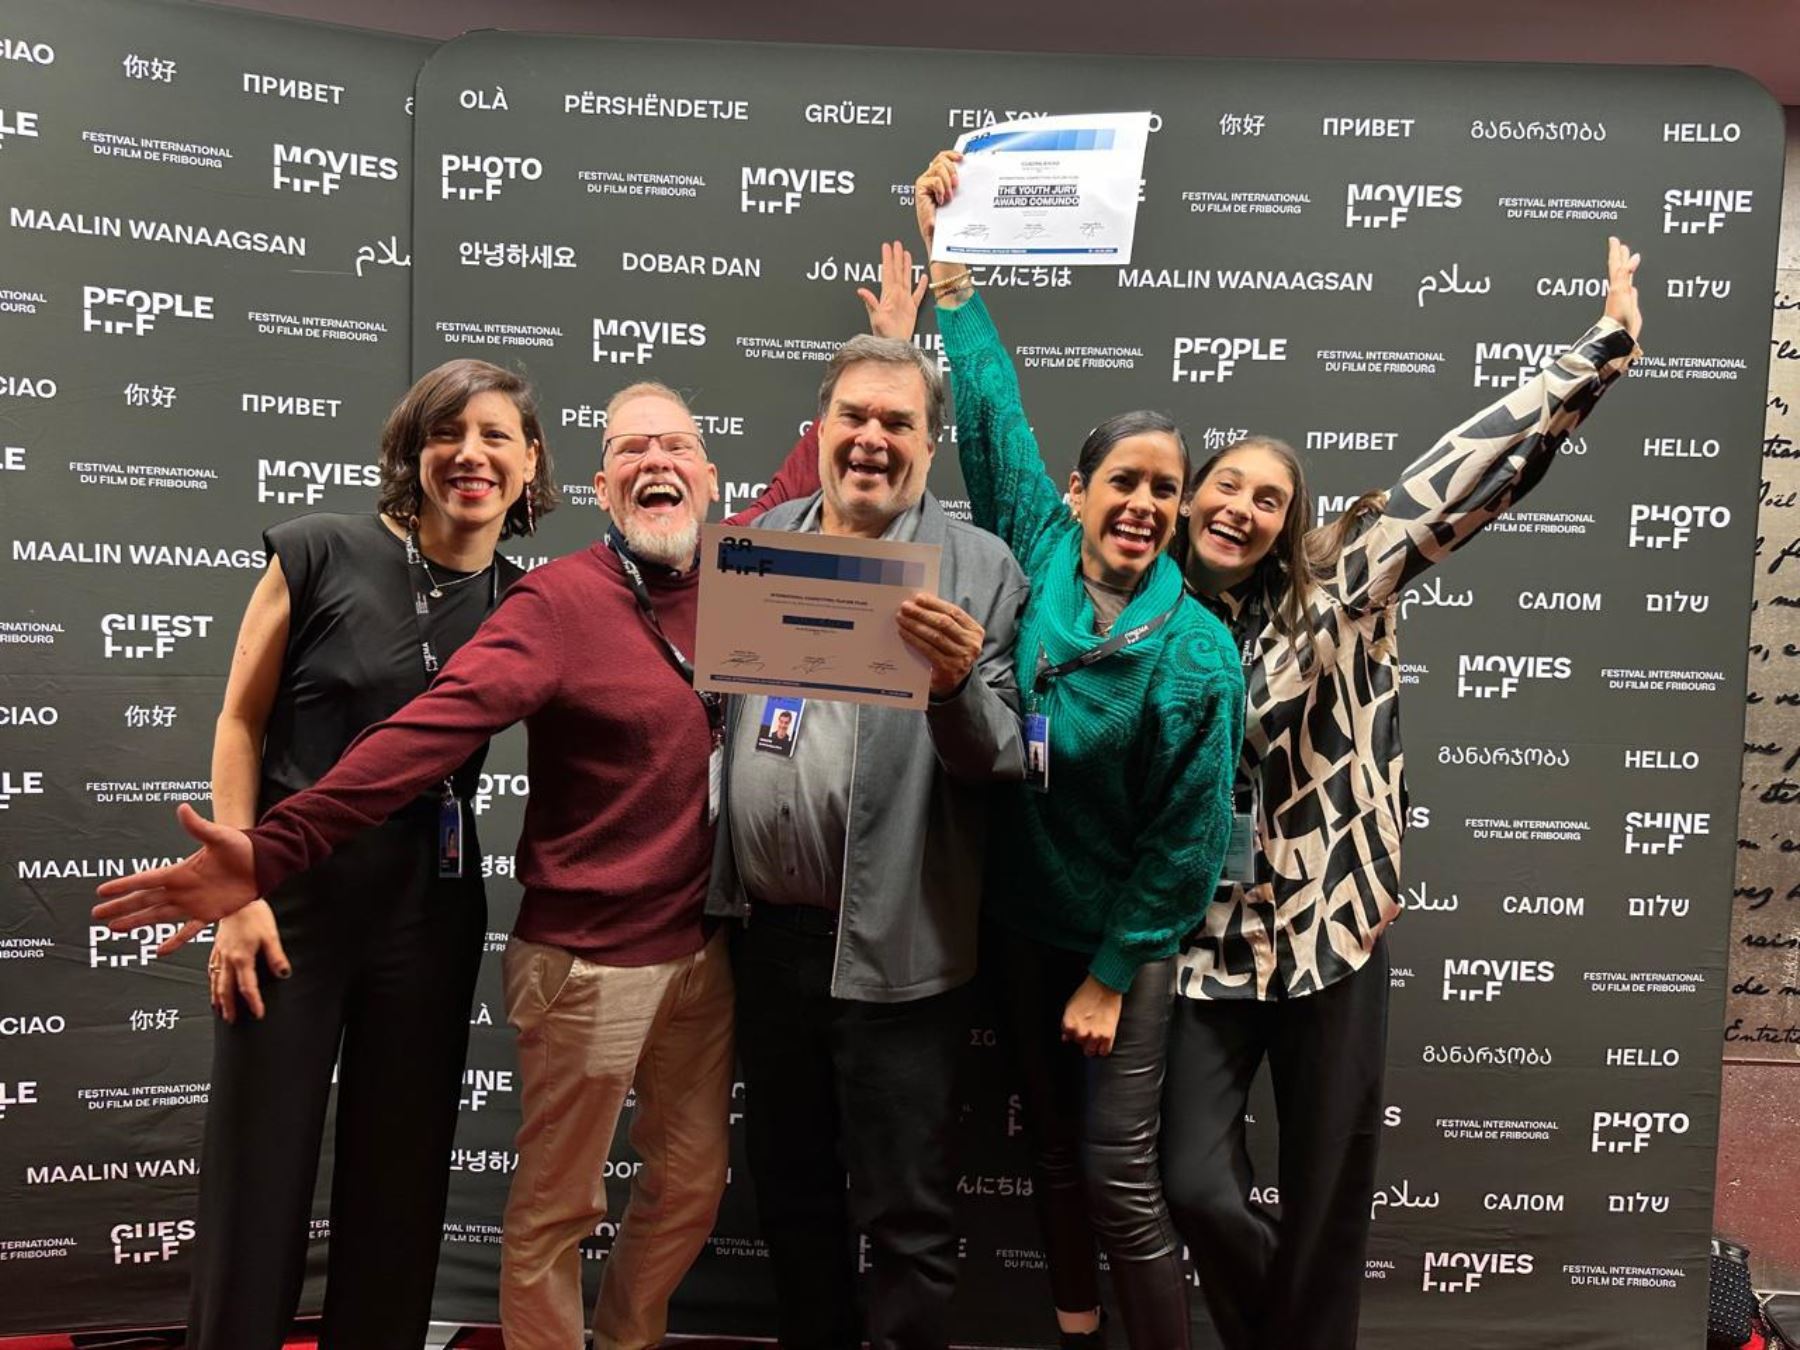 Éxito peruano: "Cuadrilátero" gana 2 premios en el Festival de Cine de Friburgo